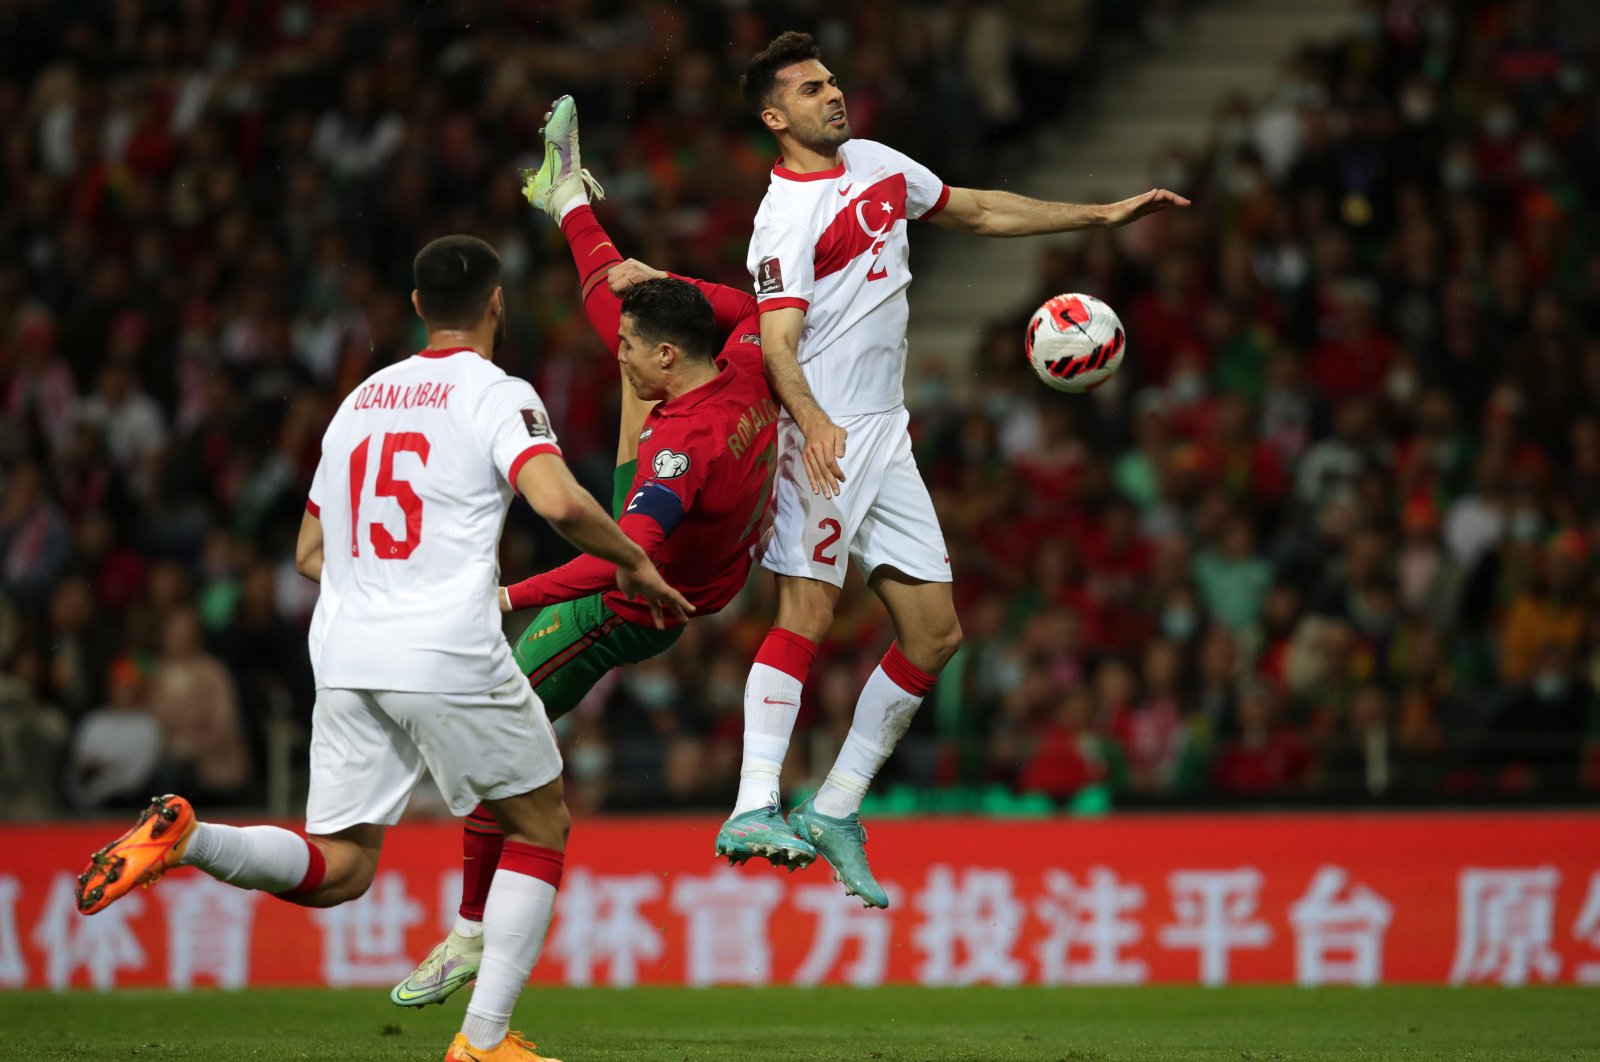 Um pênalti perdido custa à Turquia enquanto Portugal avança nas eliminatórias da Copa do Mundo